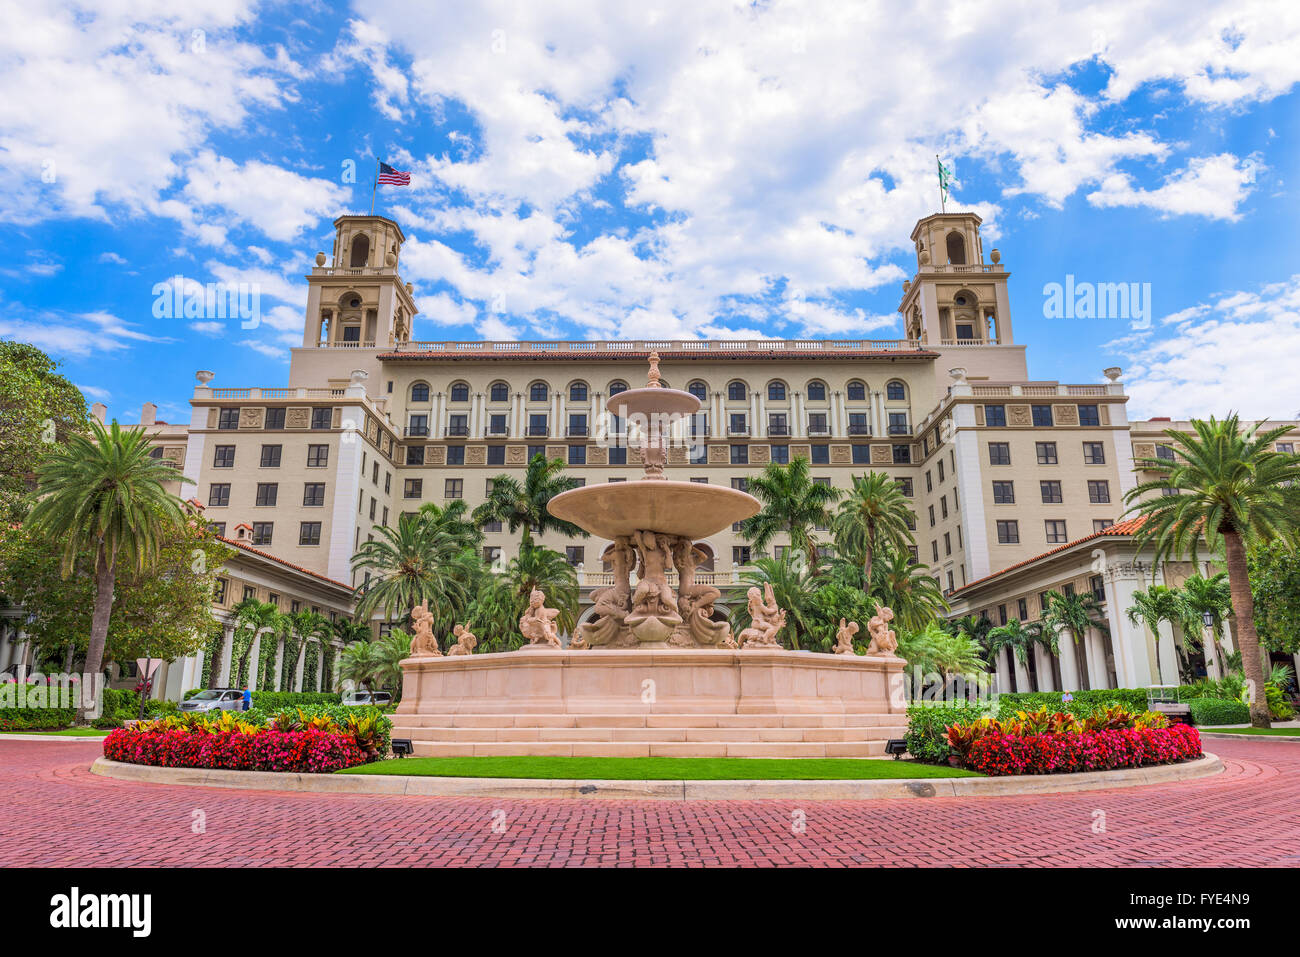 WEST PALM BEACH, FLORIDA - Aprile 4, 2016: l'esterno di interruttori Hotel di West Palm Beach. L'hotel risale al 1925. Foto Stock